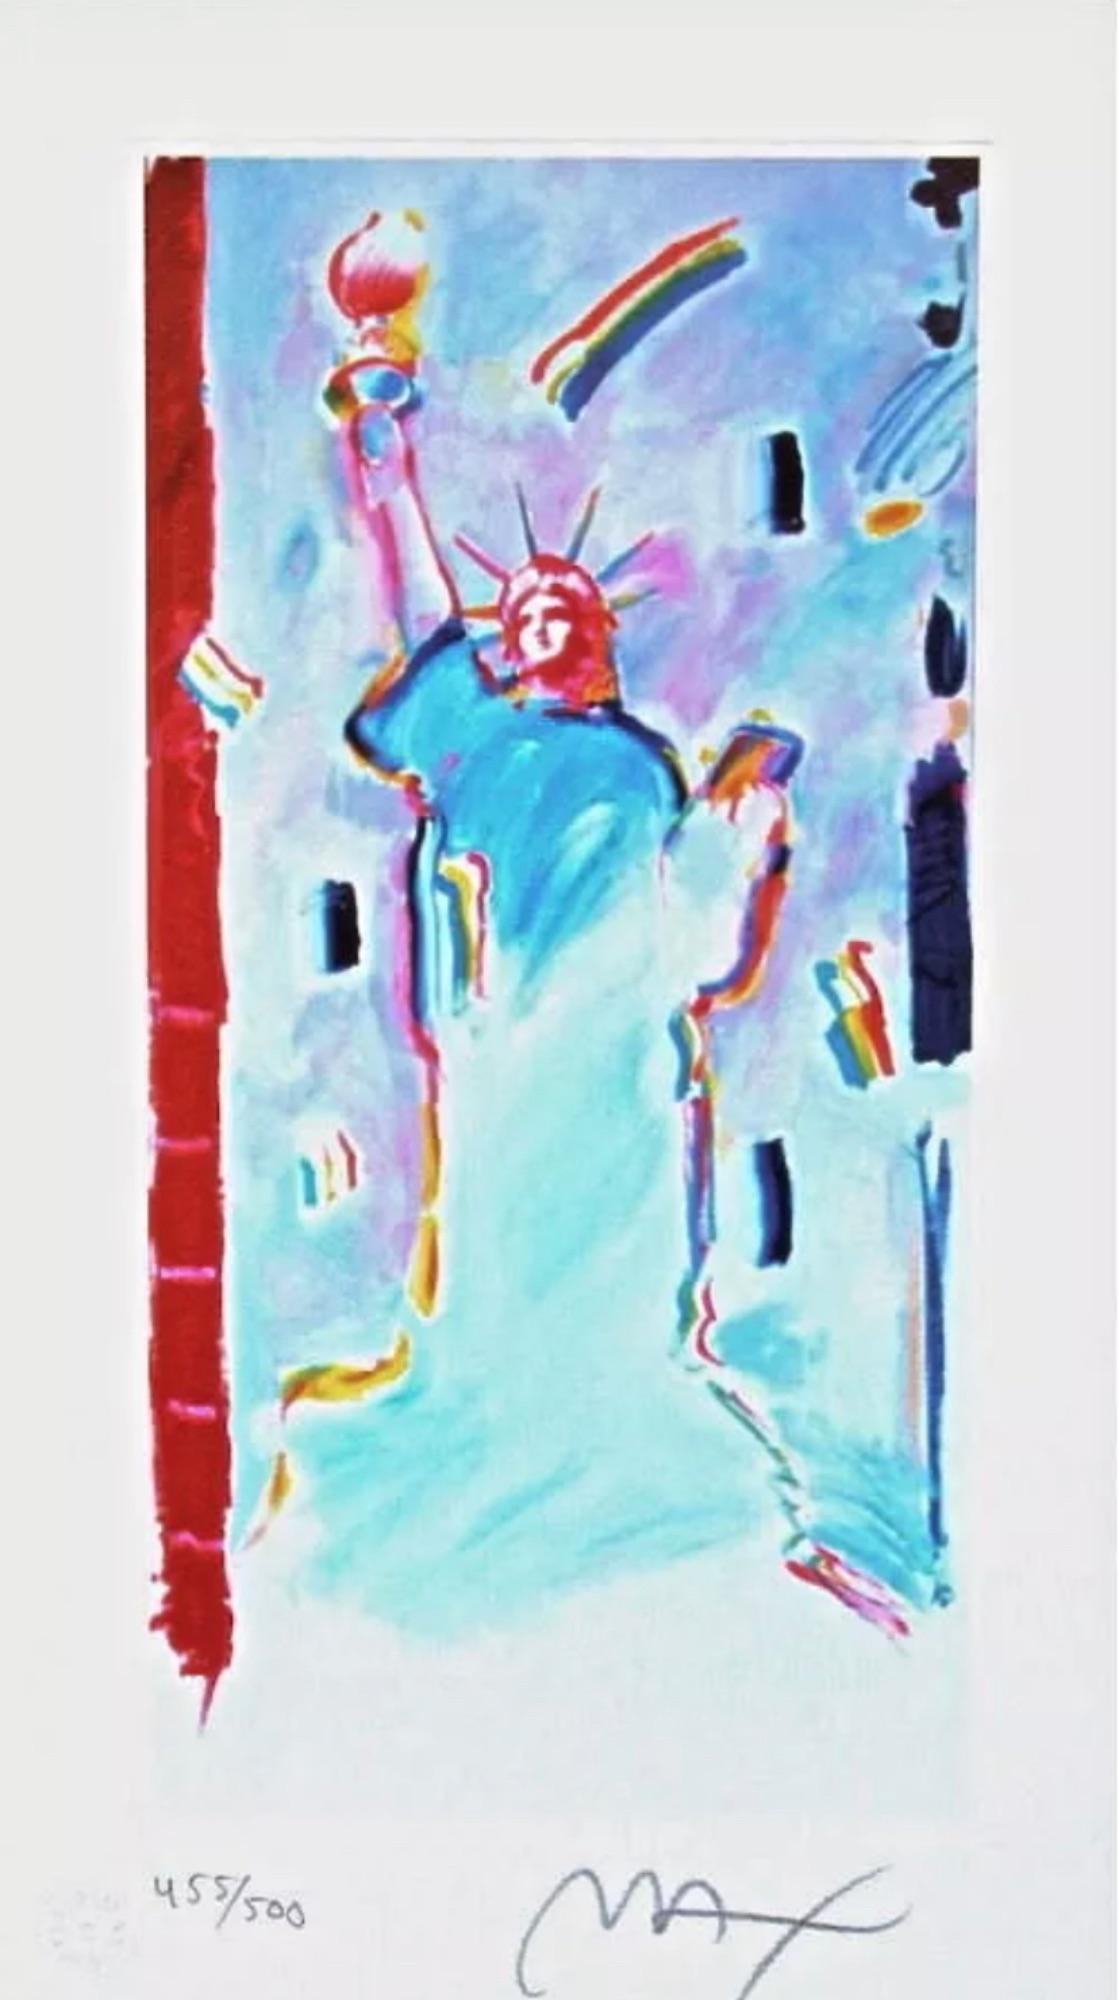 Artistics : Peter Max (1937)
Titre : Statue de la Liberté I
Année : 2003
Édition : 455/500, plus épreuves
Support : Lithographie sur papier Lustro Saxony
Taille : 10 x 5.5 pouces
Condit : Excellent
Inscription : Signé et numéroté par